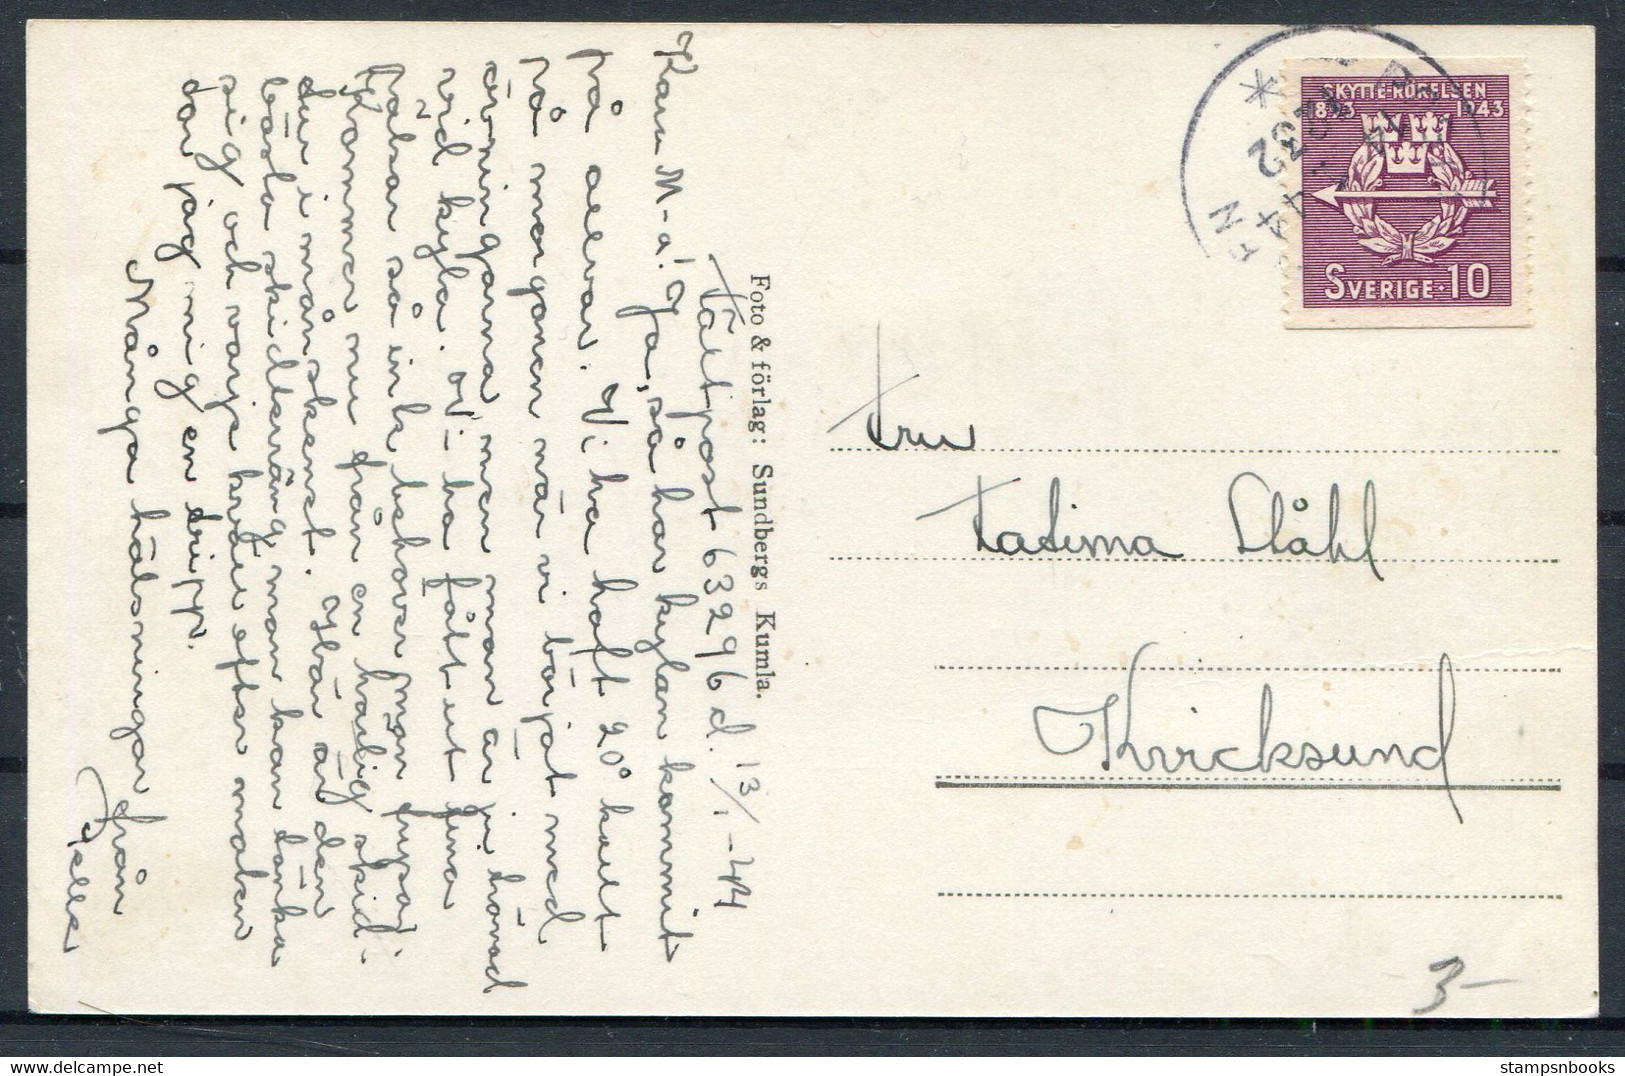 1944 Sweden Karlsson Willie Bergstrom Postcard, Postanstalen 1232 - Militärmarken